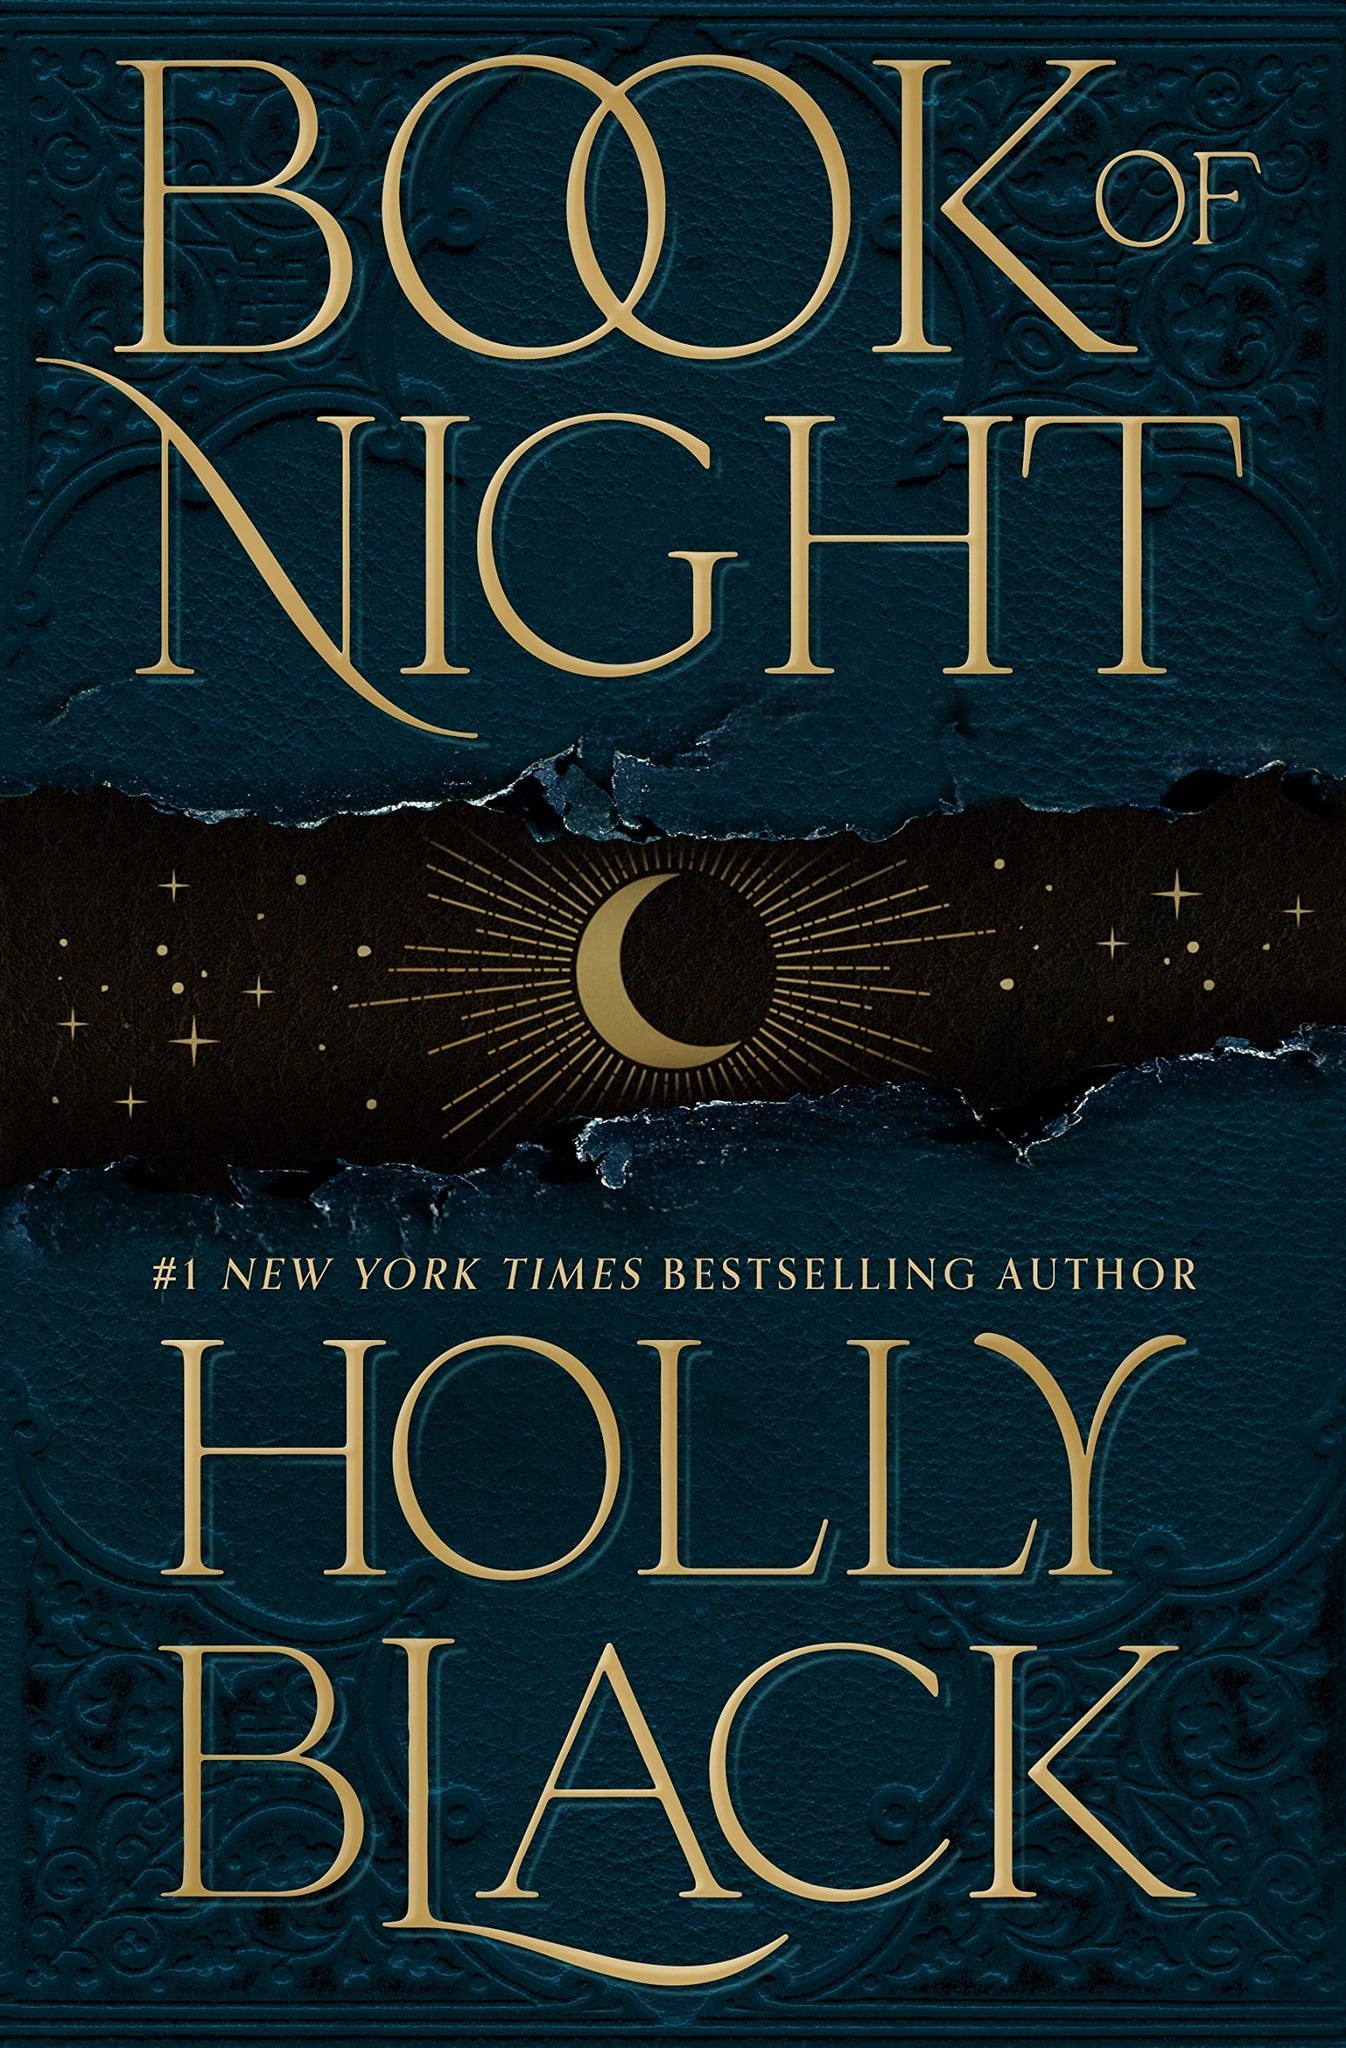 Livro da Noite de Holly Black